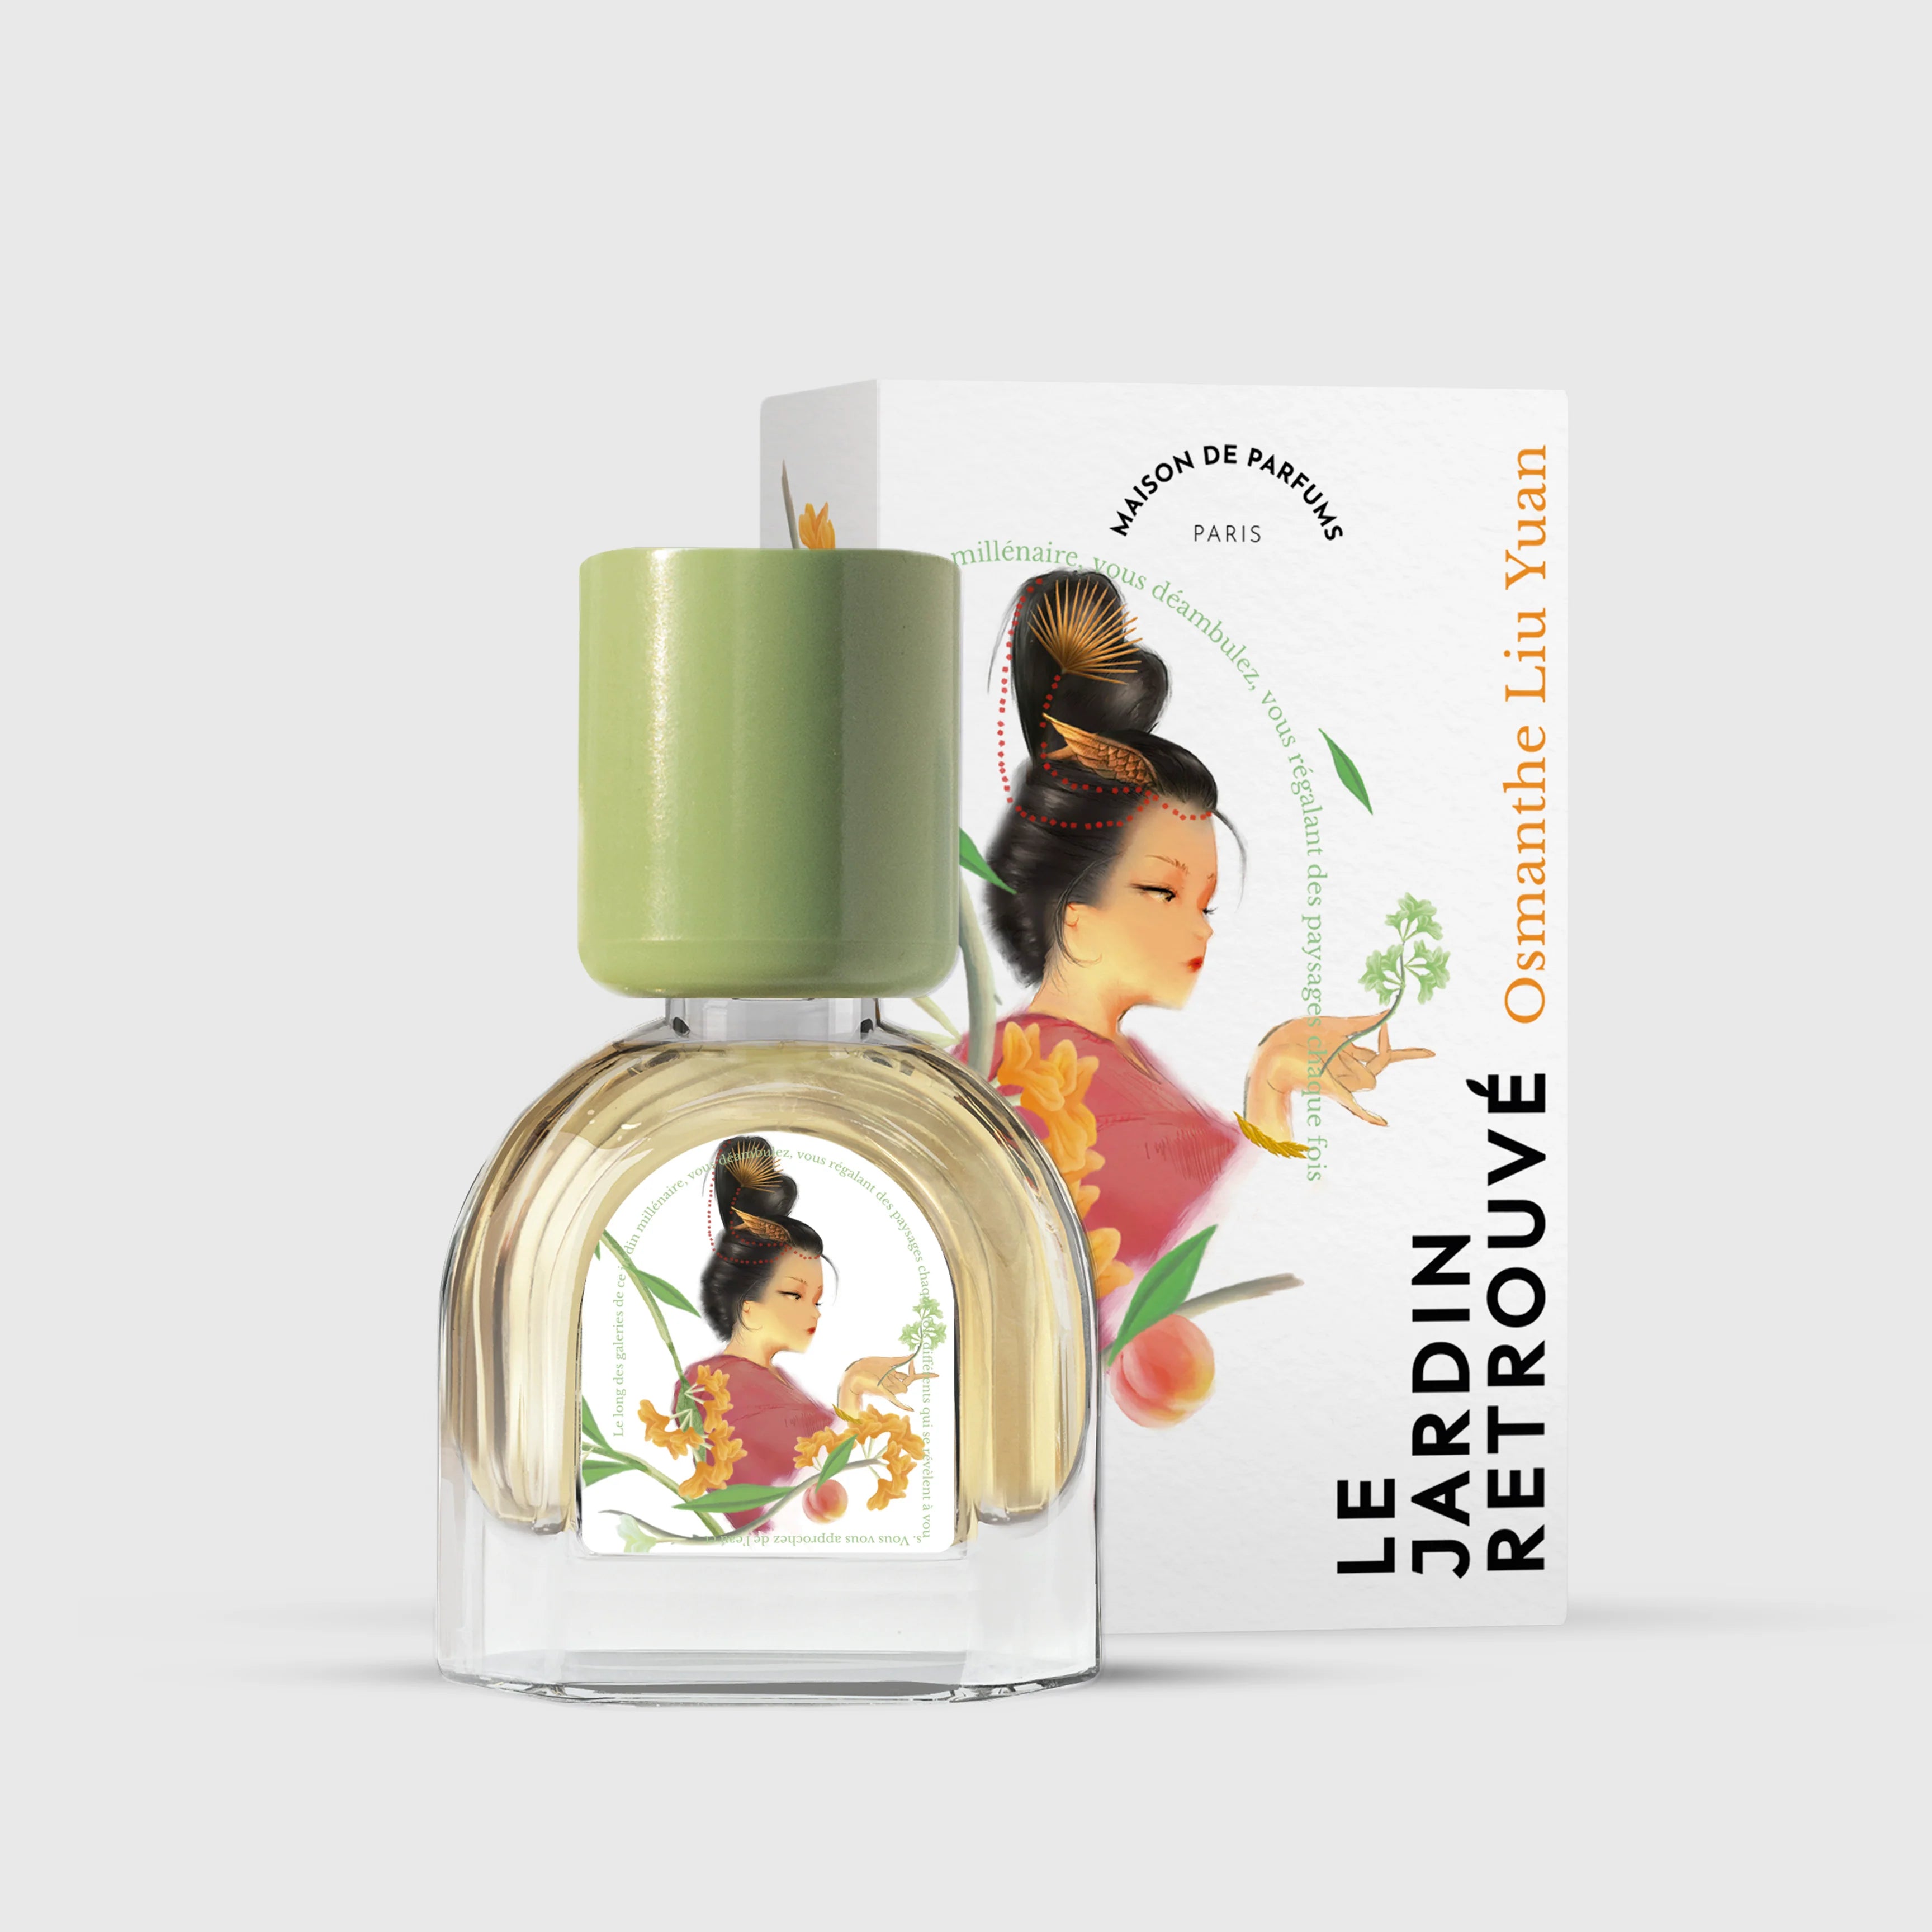 Osmanthe Liu Yuan Eau de Parfum 15ml Bottle and Box by Le Jardin Retrouvé